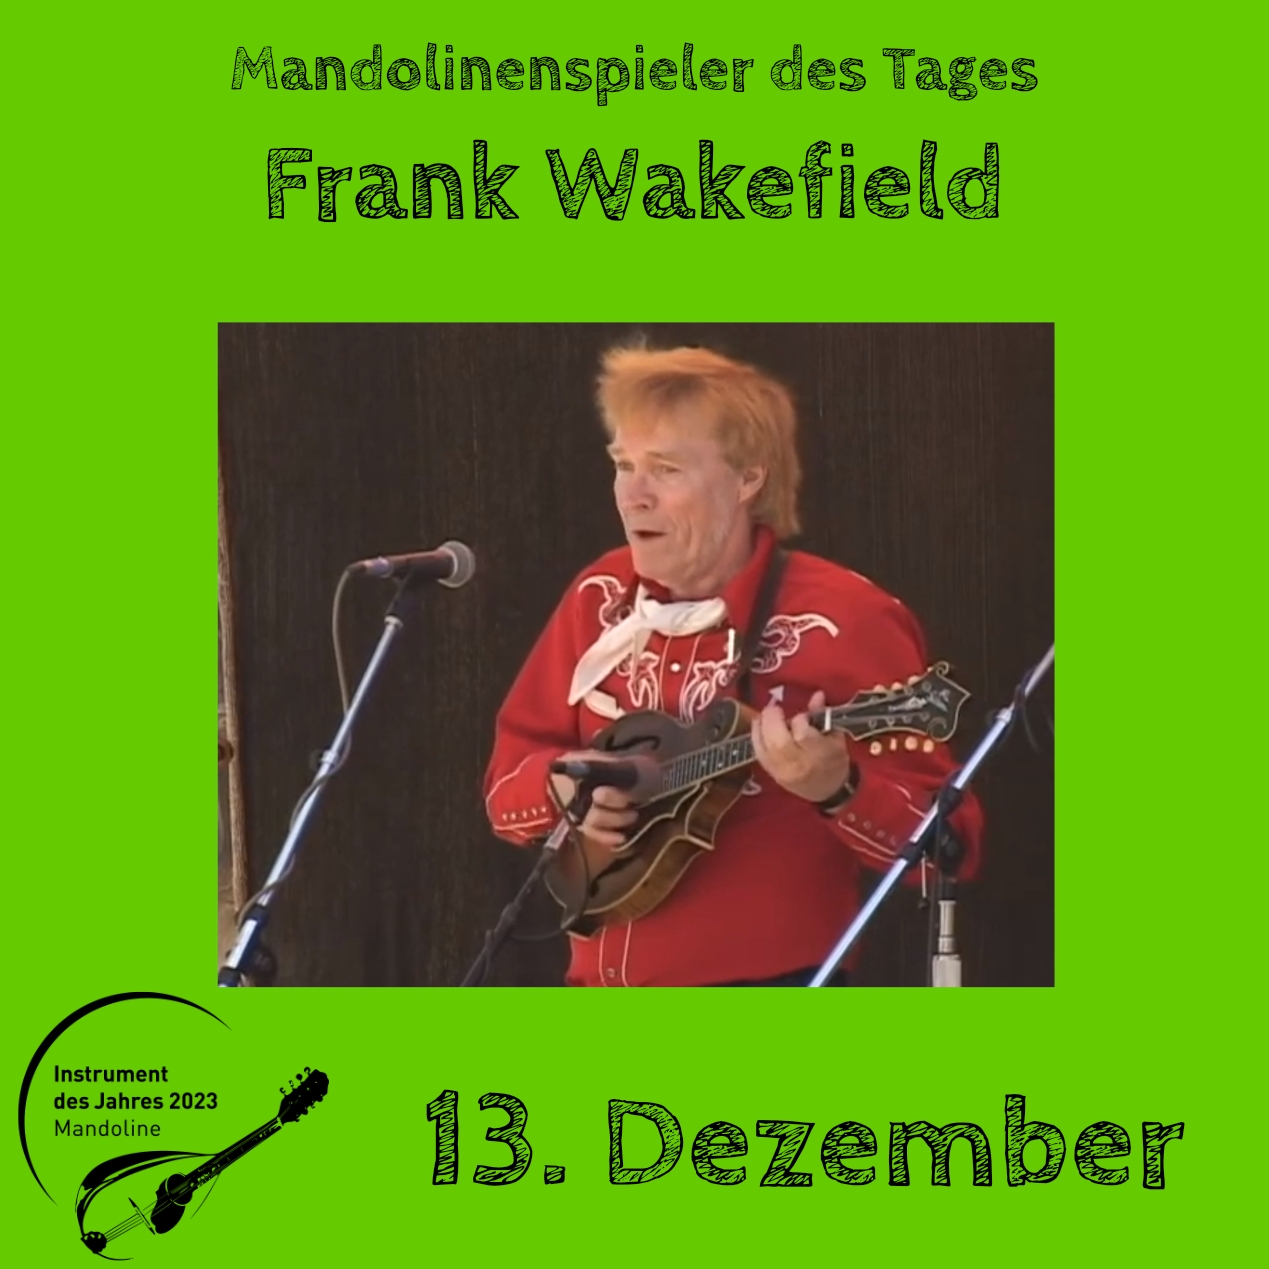 13. Dezember - Frank Wakefield Instrument des Jahres 2023 Mandolinenspieler Mandolinenspielerin des Tages